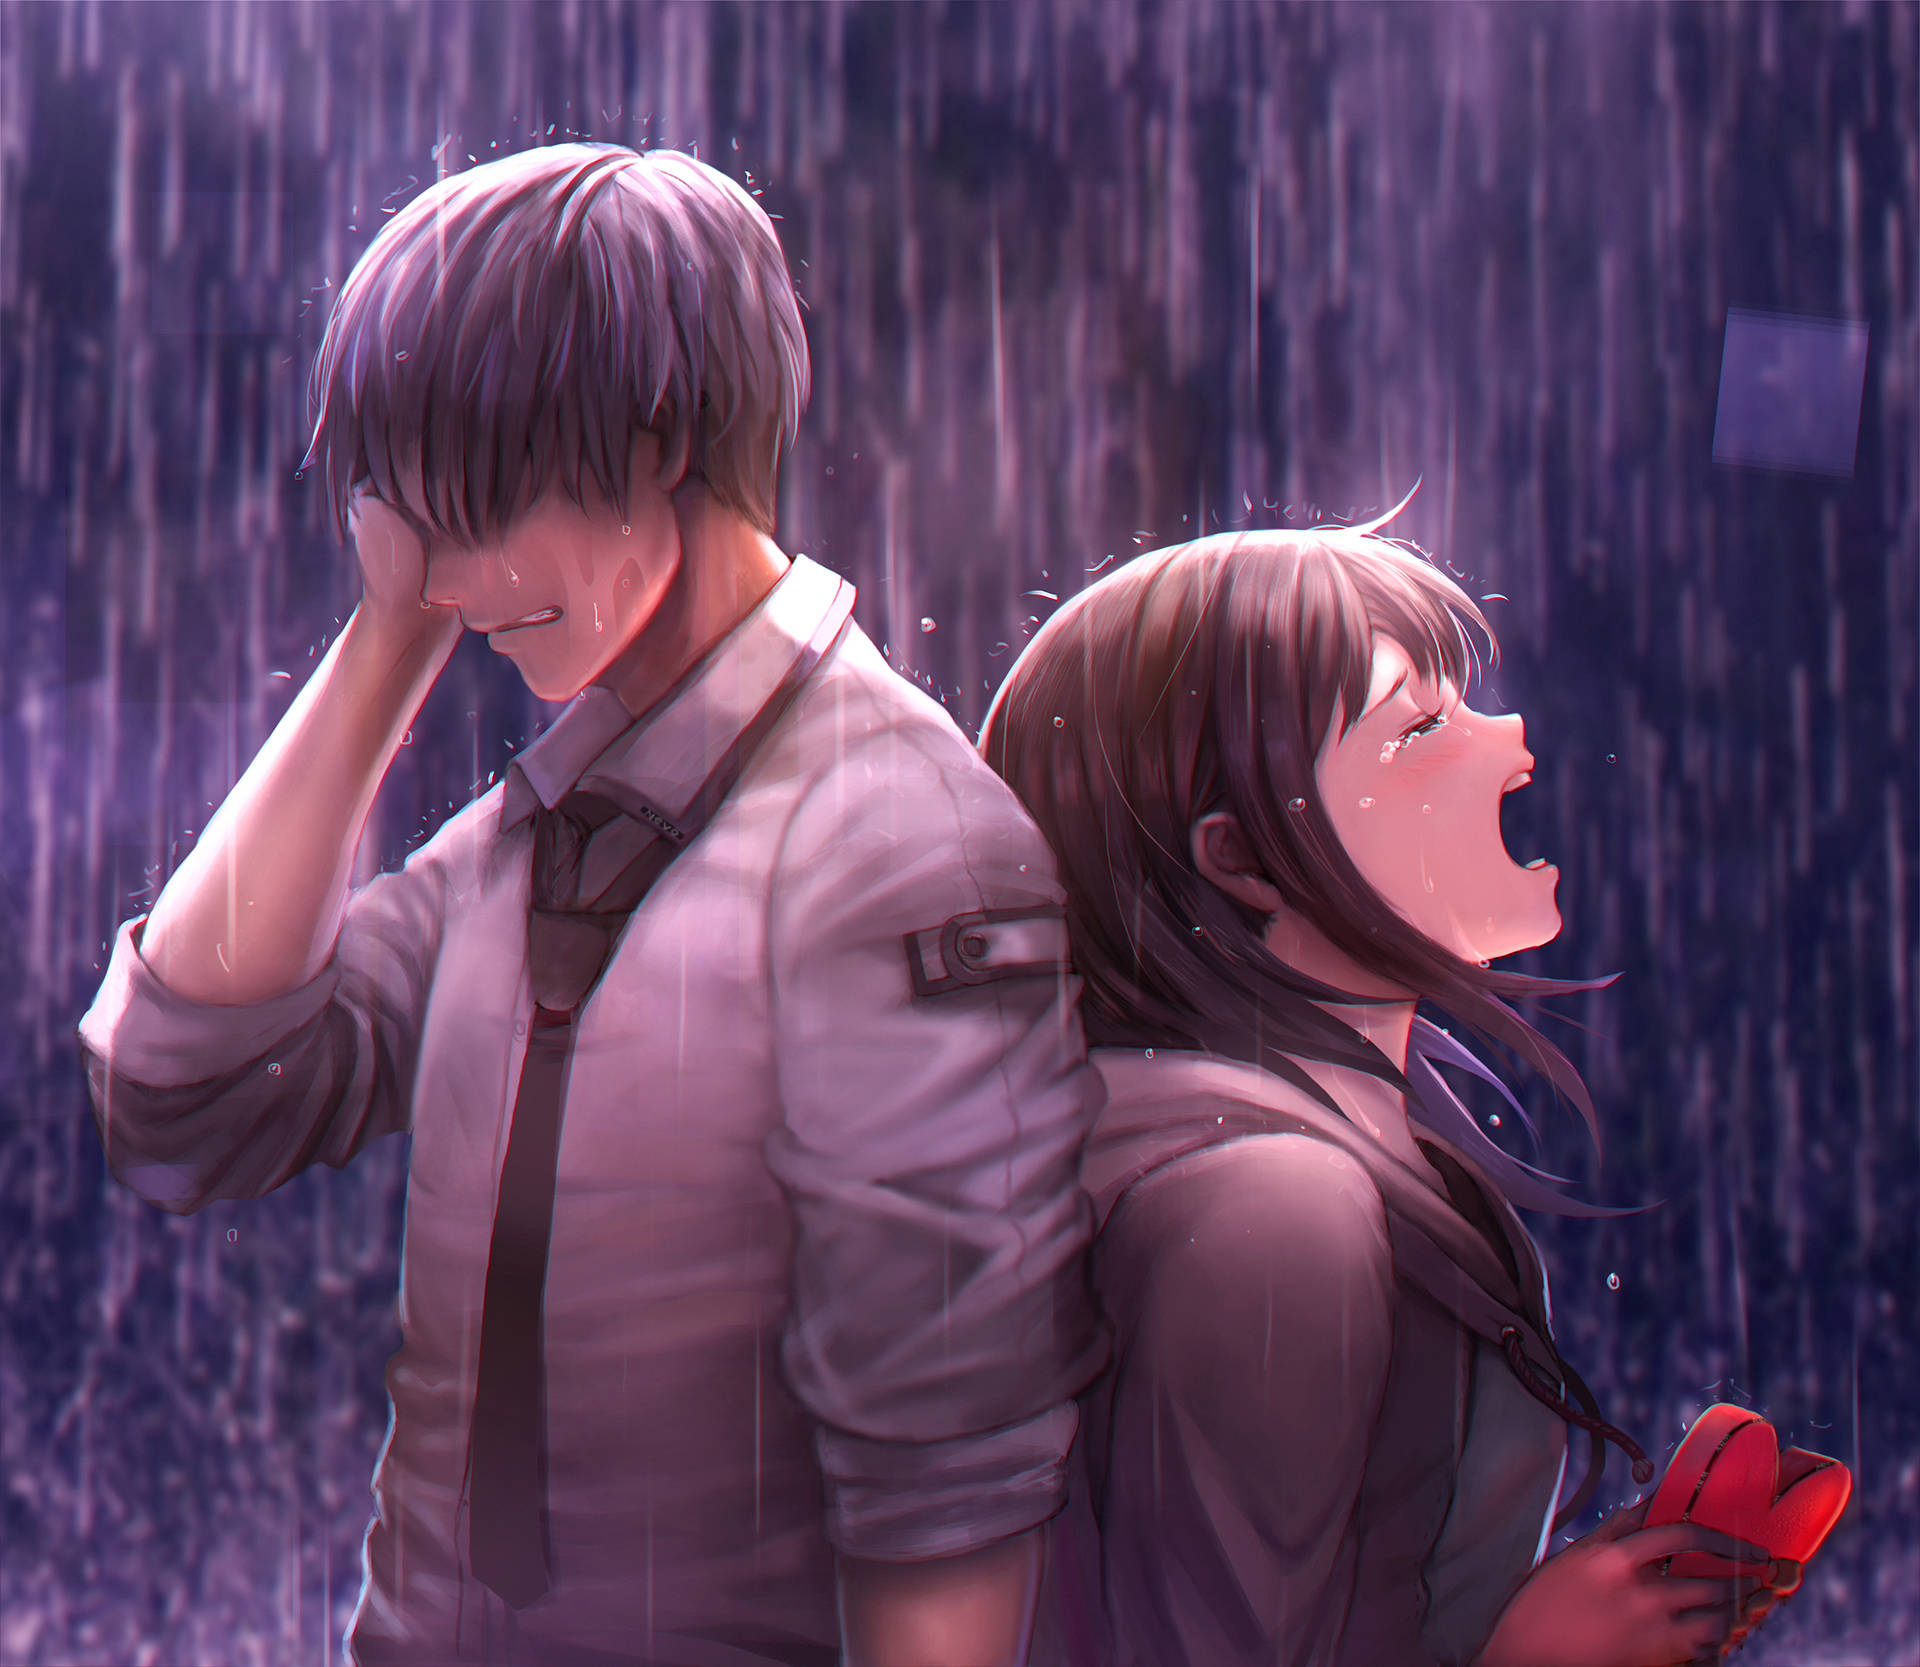 Download Sad Anime Boy And Girl Wallpaper 